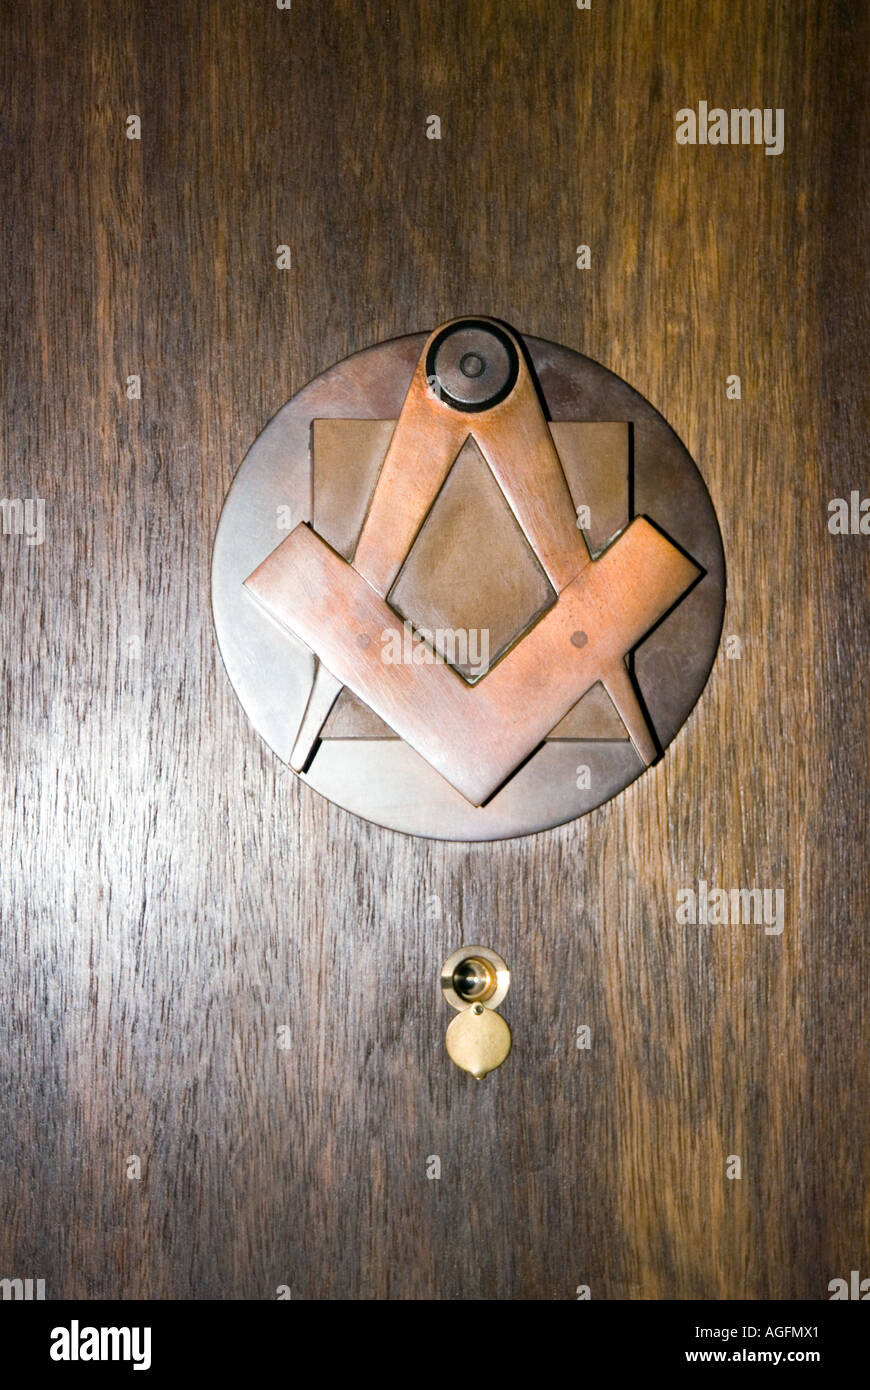 Messing Türklopfer Freimaurersymbolen Kompass Quadrat in eine Freimaurerloge Freimaurer Freimaurerei Freimaurer Geheimnis H3MHRW AGFMX1 Stockfoto